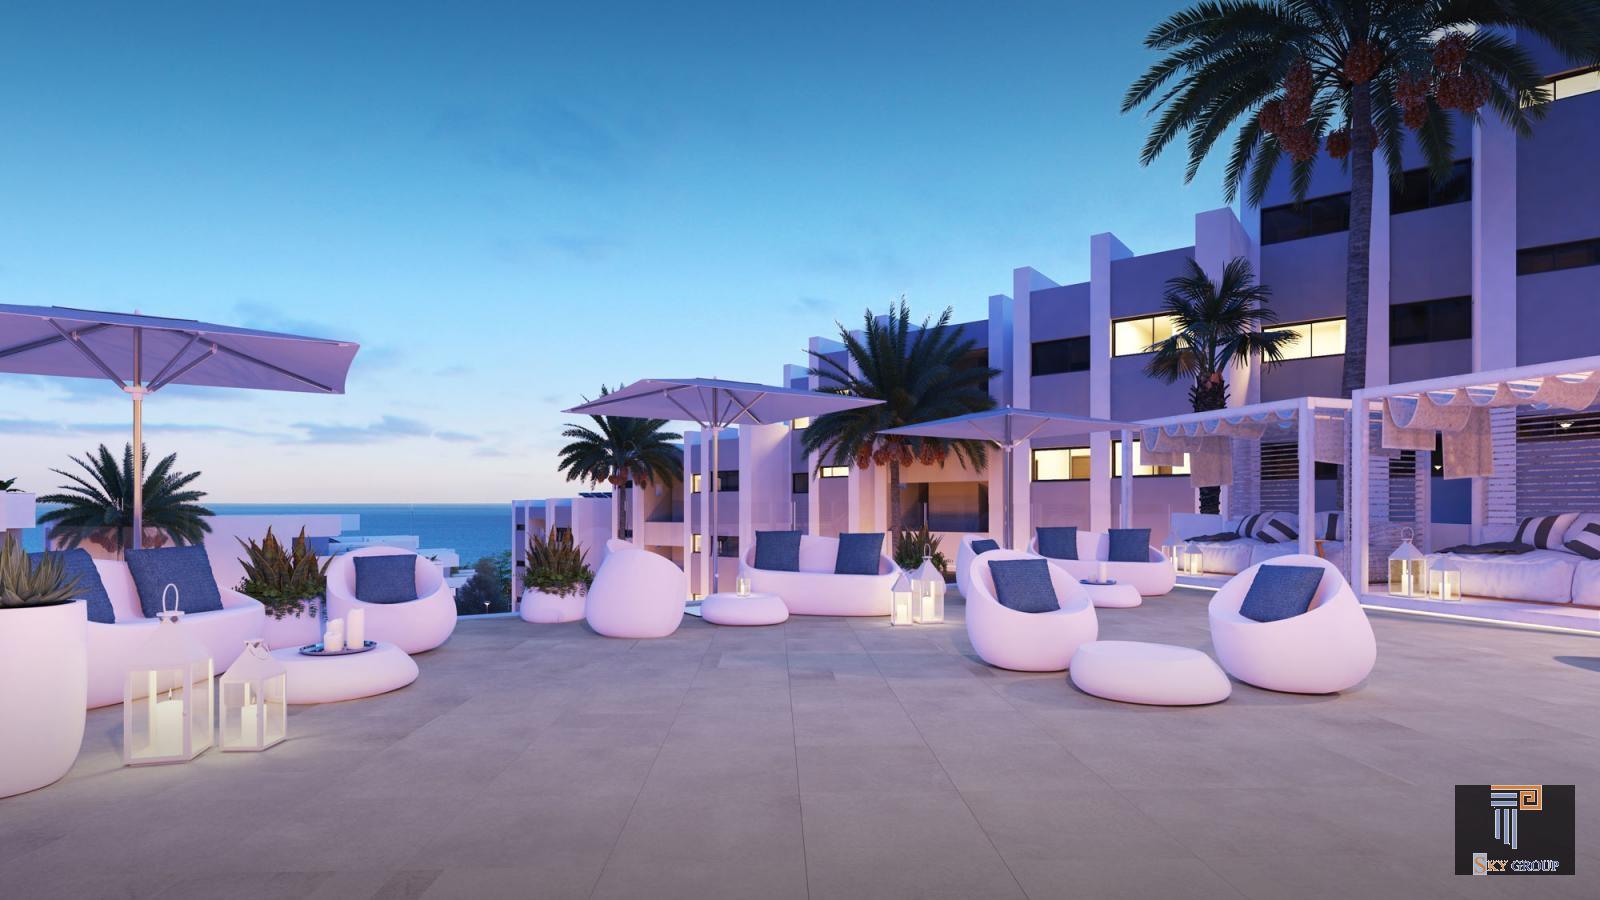 Luxuriöse Apartment zum verkauf in Manilva Costa (Manilva), 355.600 €